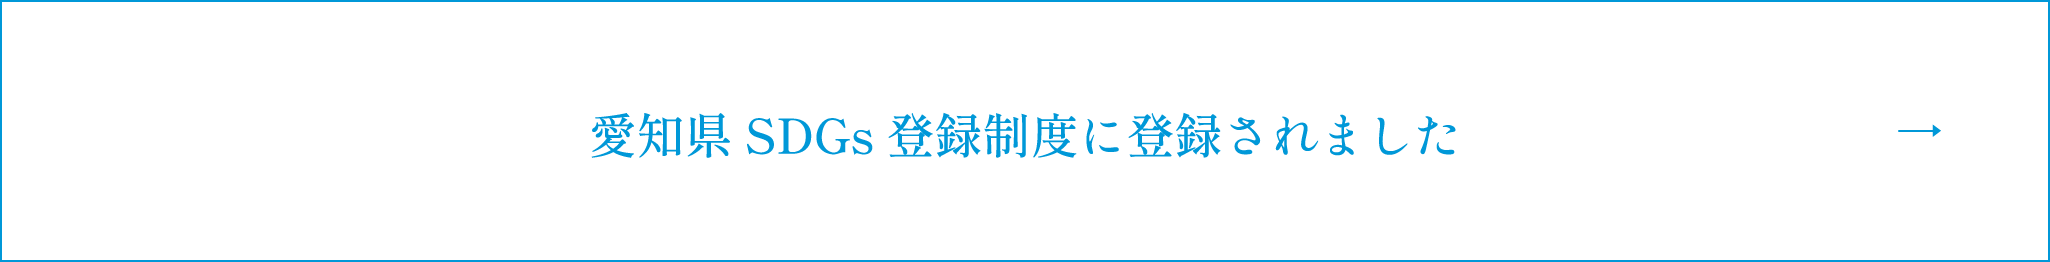 愛知県SDGs 登録制度に登録されました